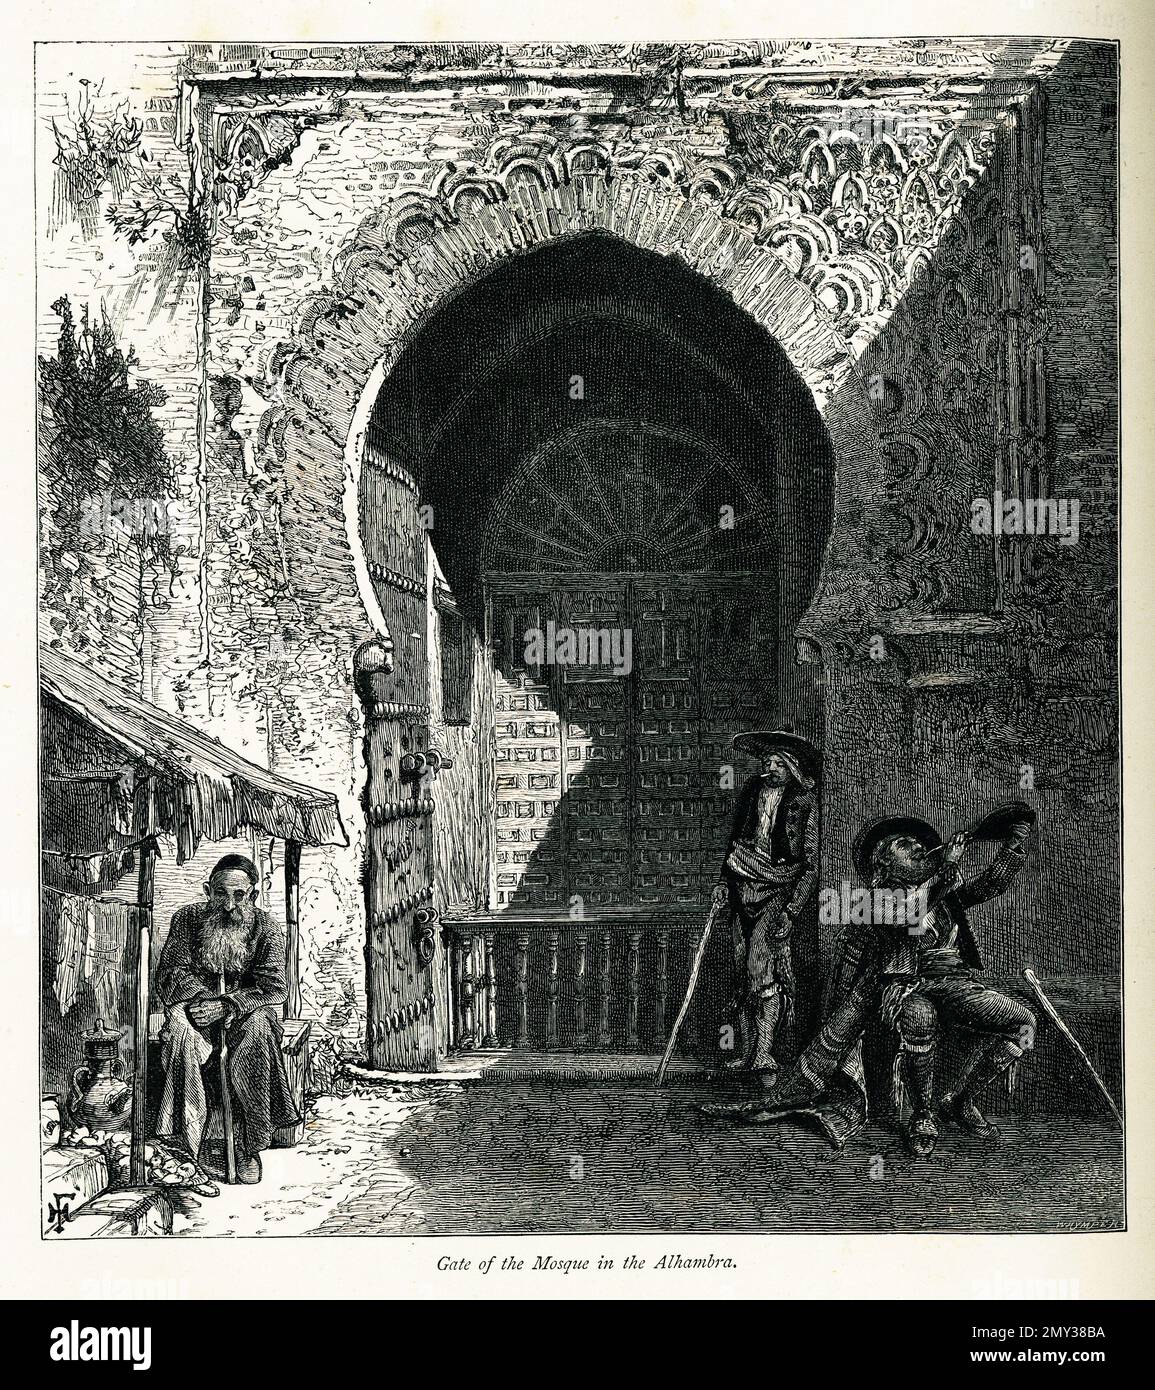 Antica incisione della porta della moschea in Alhambra, Granada, Spagna. Illustrazione pubblicata in picturesque Europe, Vol. V (Cassell & Company, Limited: Lo Foto Stock